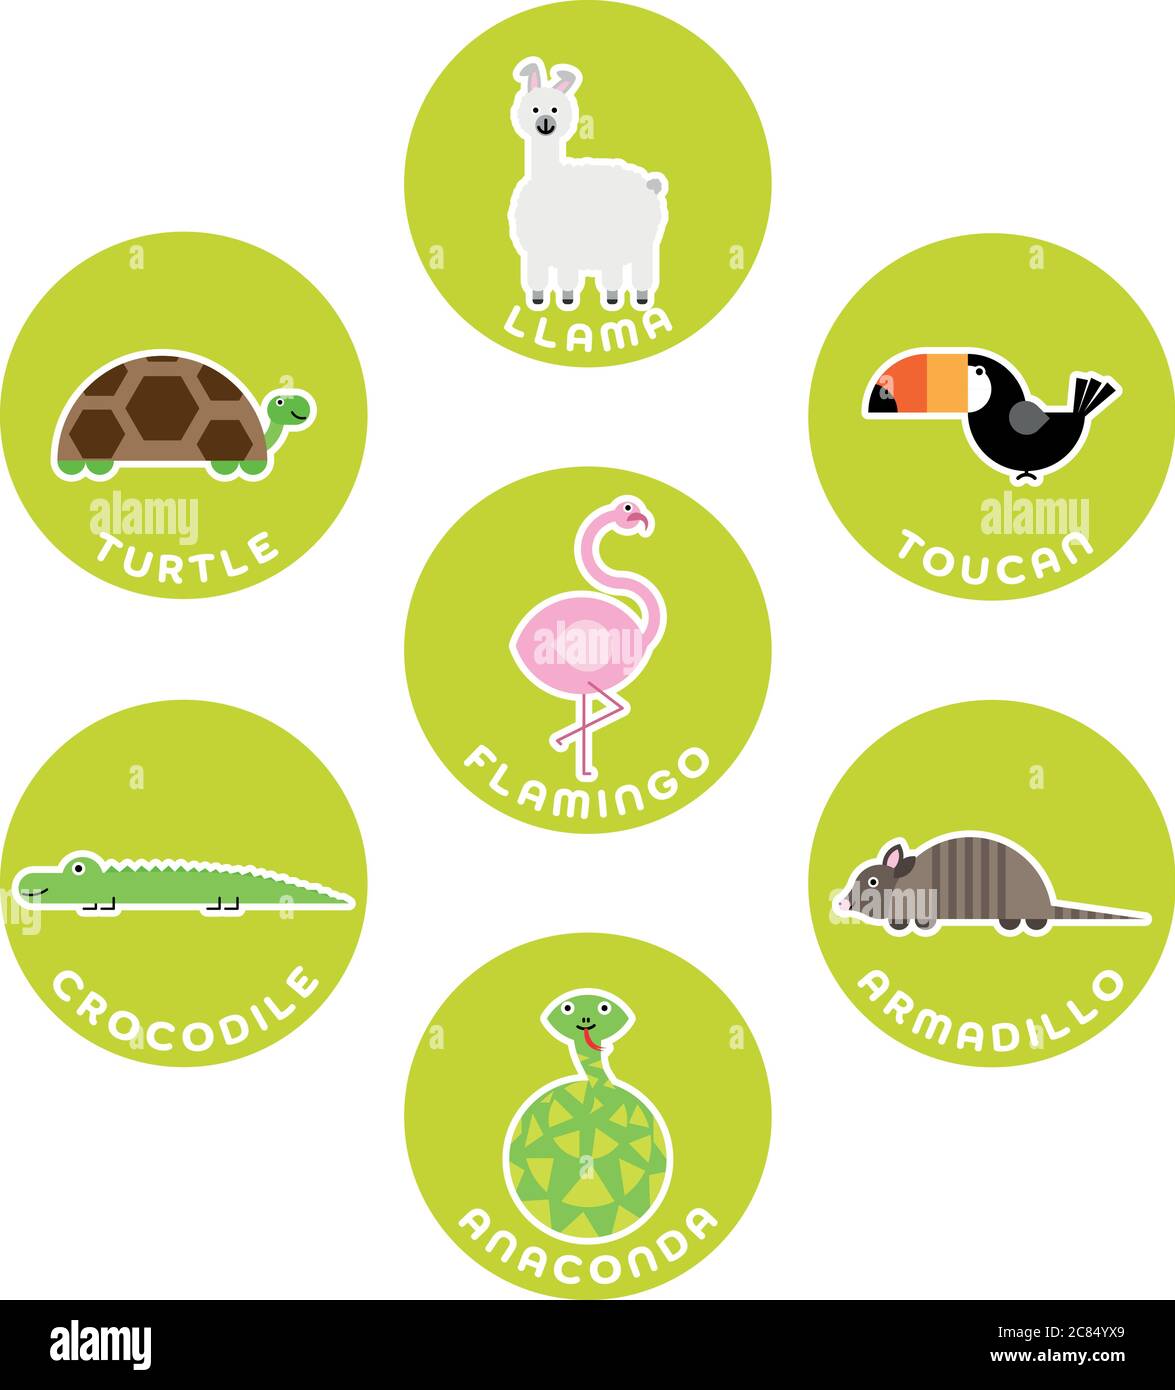 Südamerikanische Wildtiersammlung. Set von 7 Comic-Figuren im Kreis mit Namensschildern. Vektorgrafik. Stock Vektor